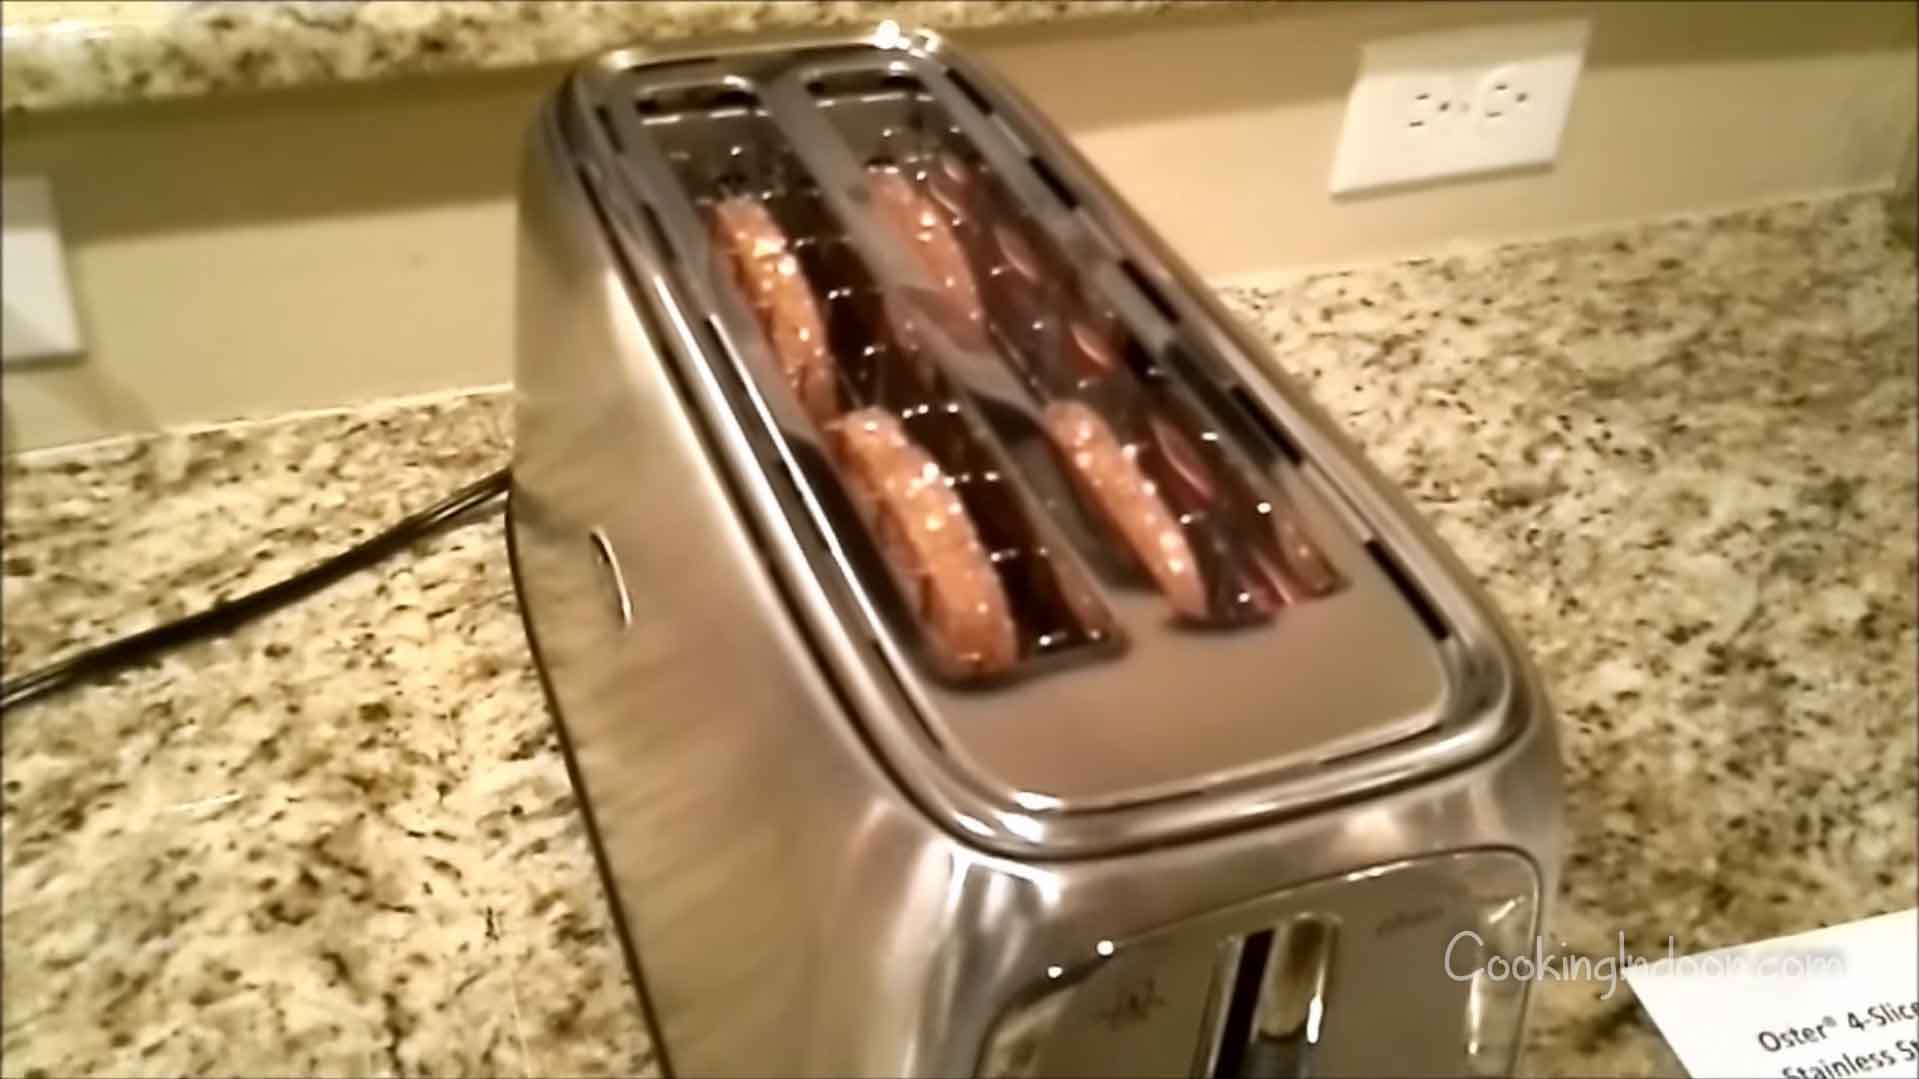 https://cookingindoor.com/wp-content/uploads/Best-thin-toaster.jpg